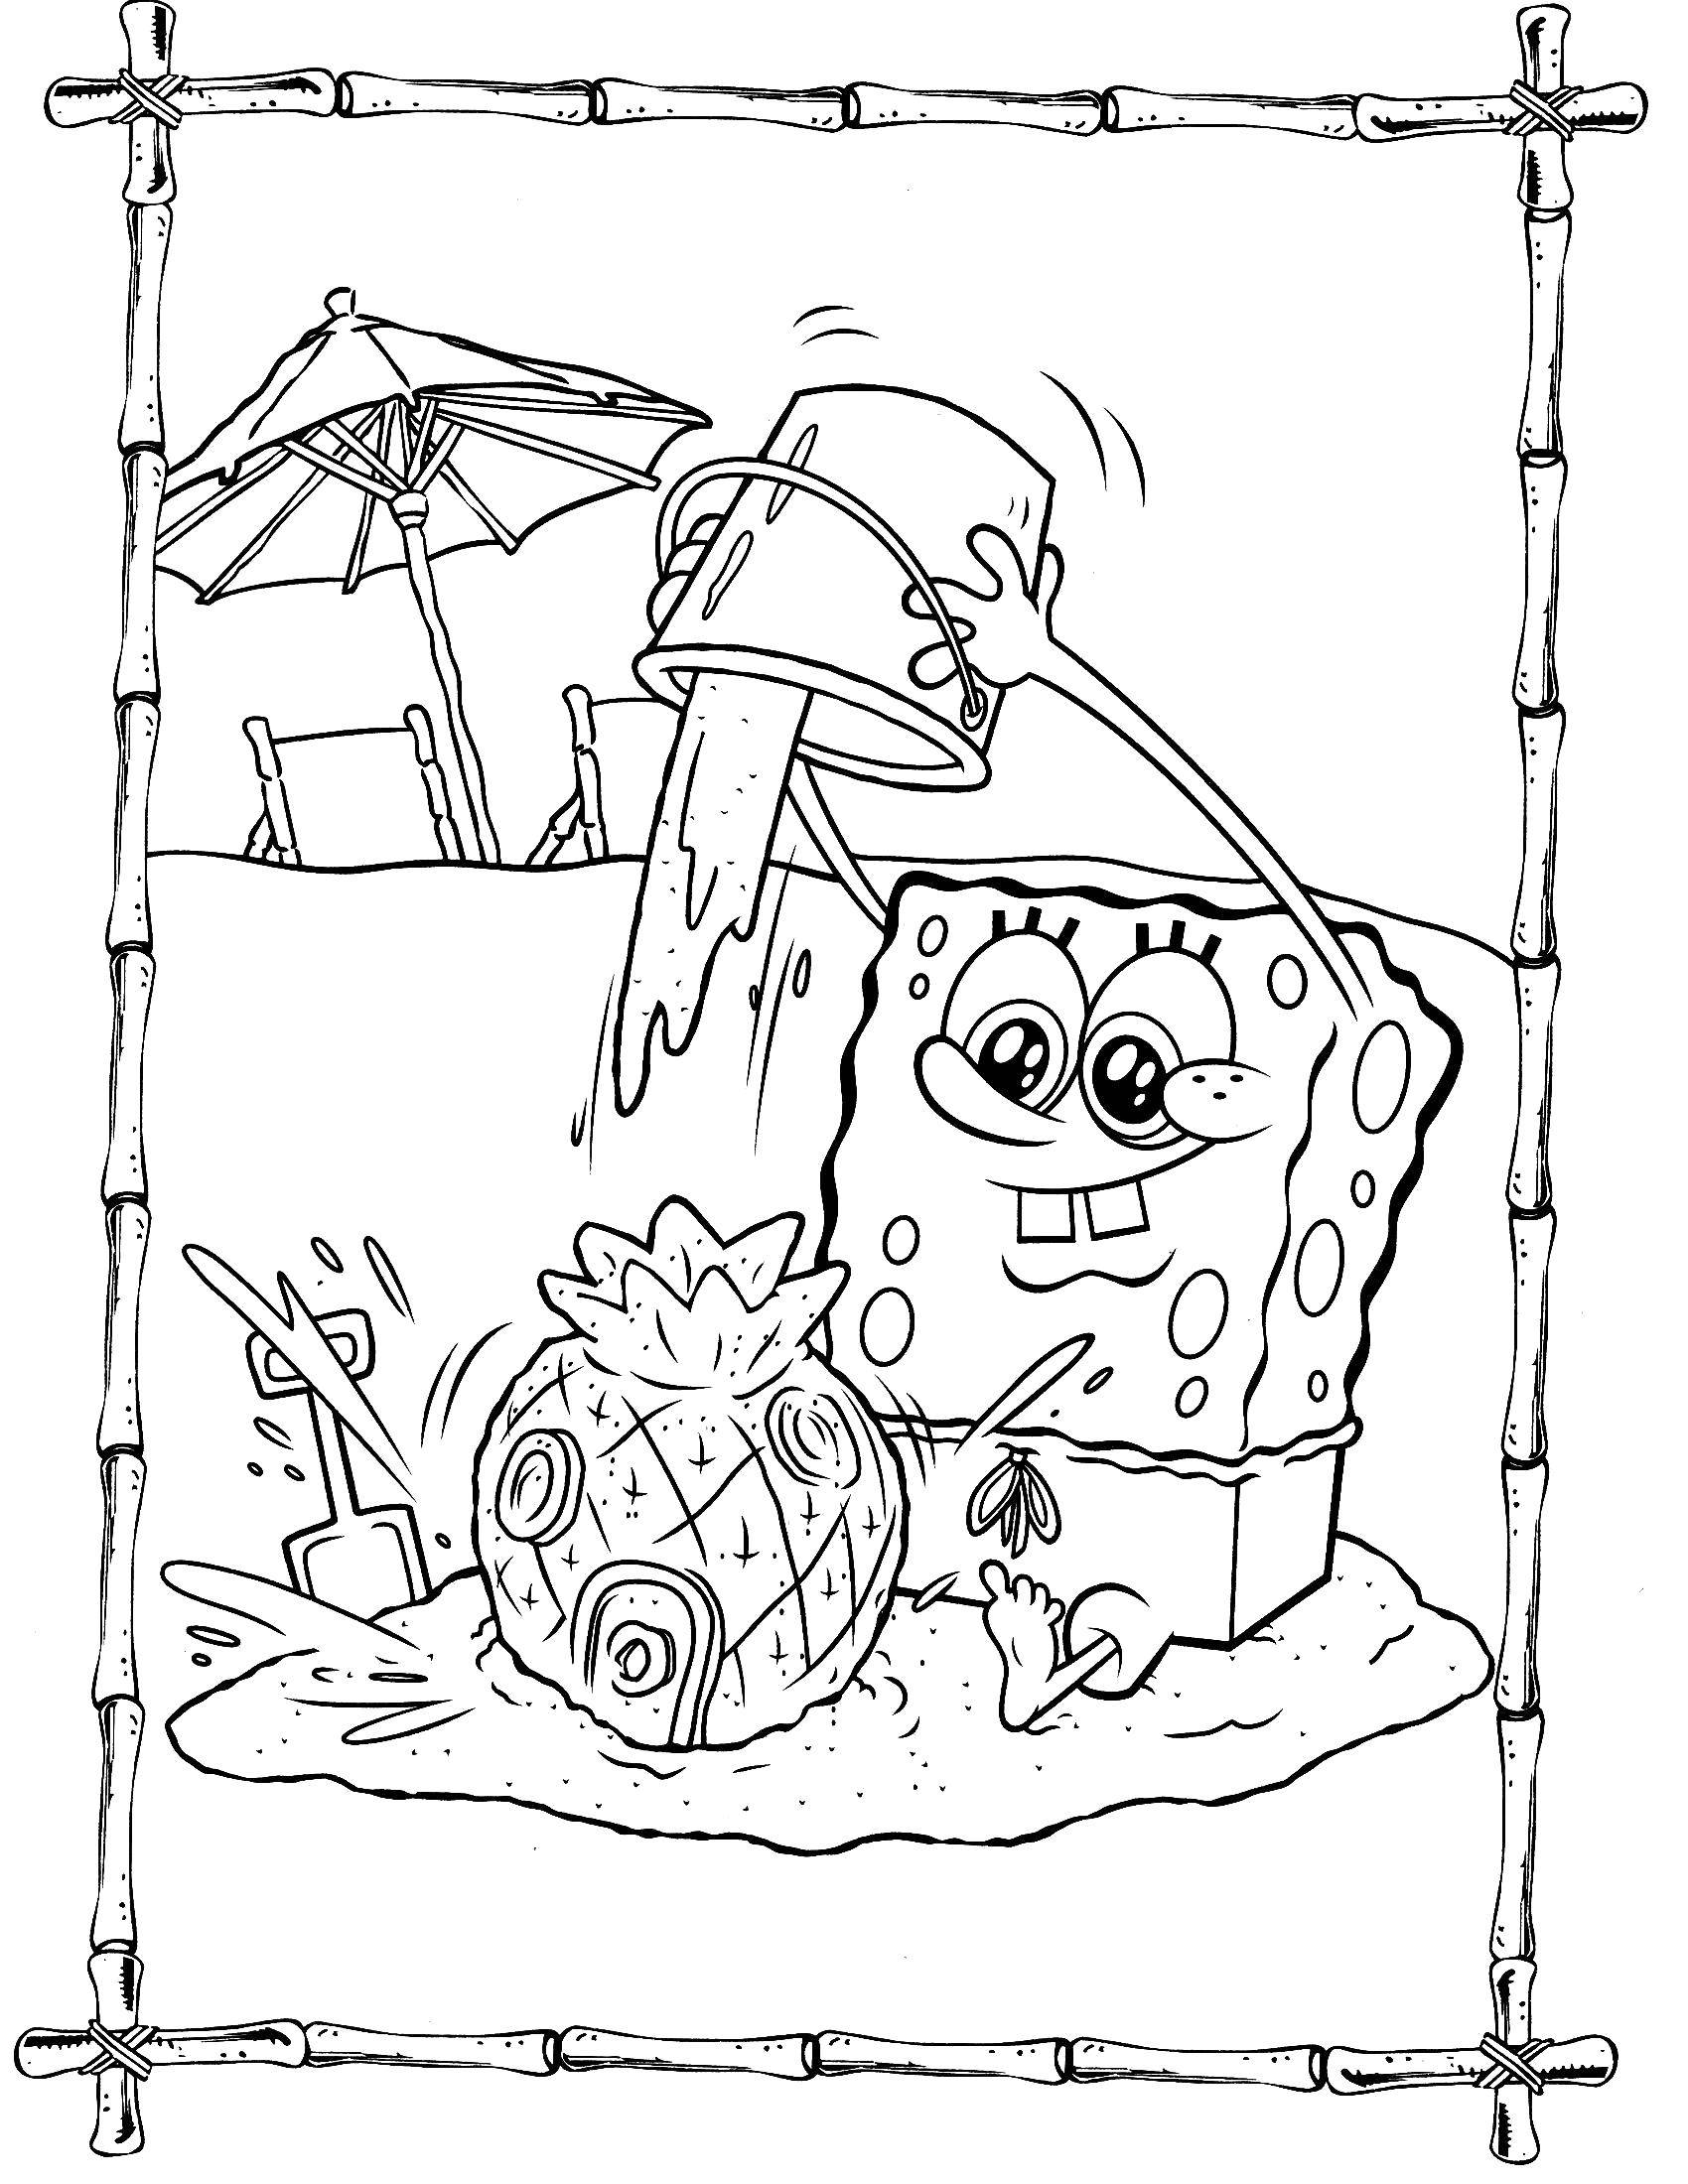 Название: Раскраска Губка боб строит песчаный замок. Категория: Персонаж из мультфильма. Теги: Персонаж из мультфильма, Спанч Боб, Губка Боб.